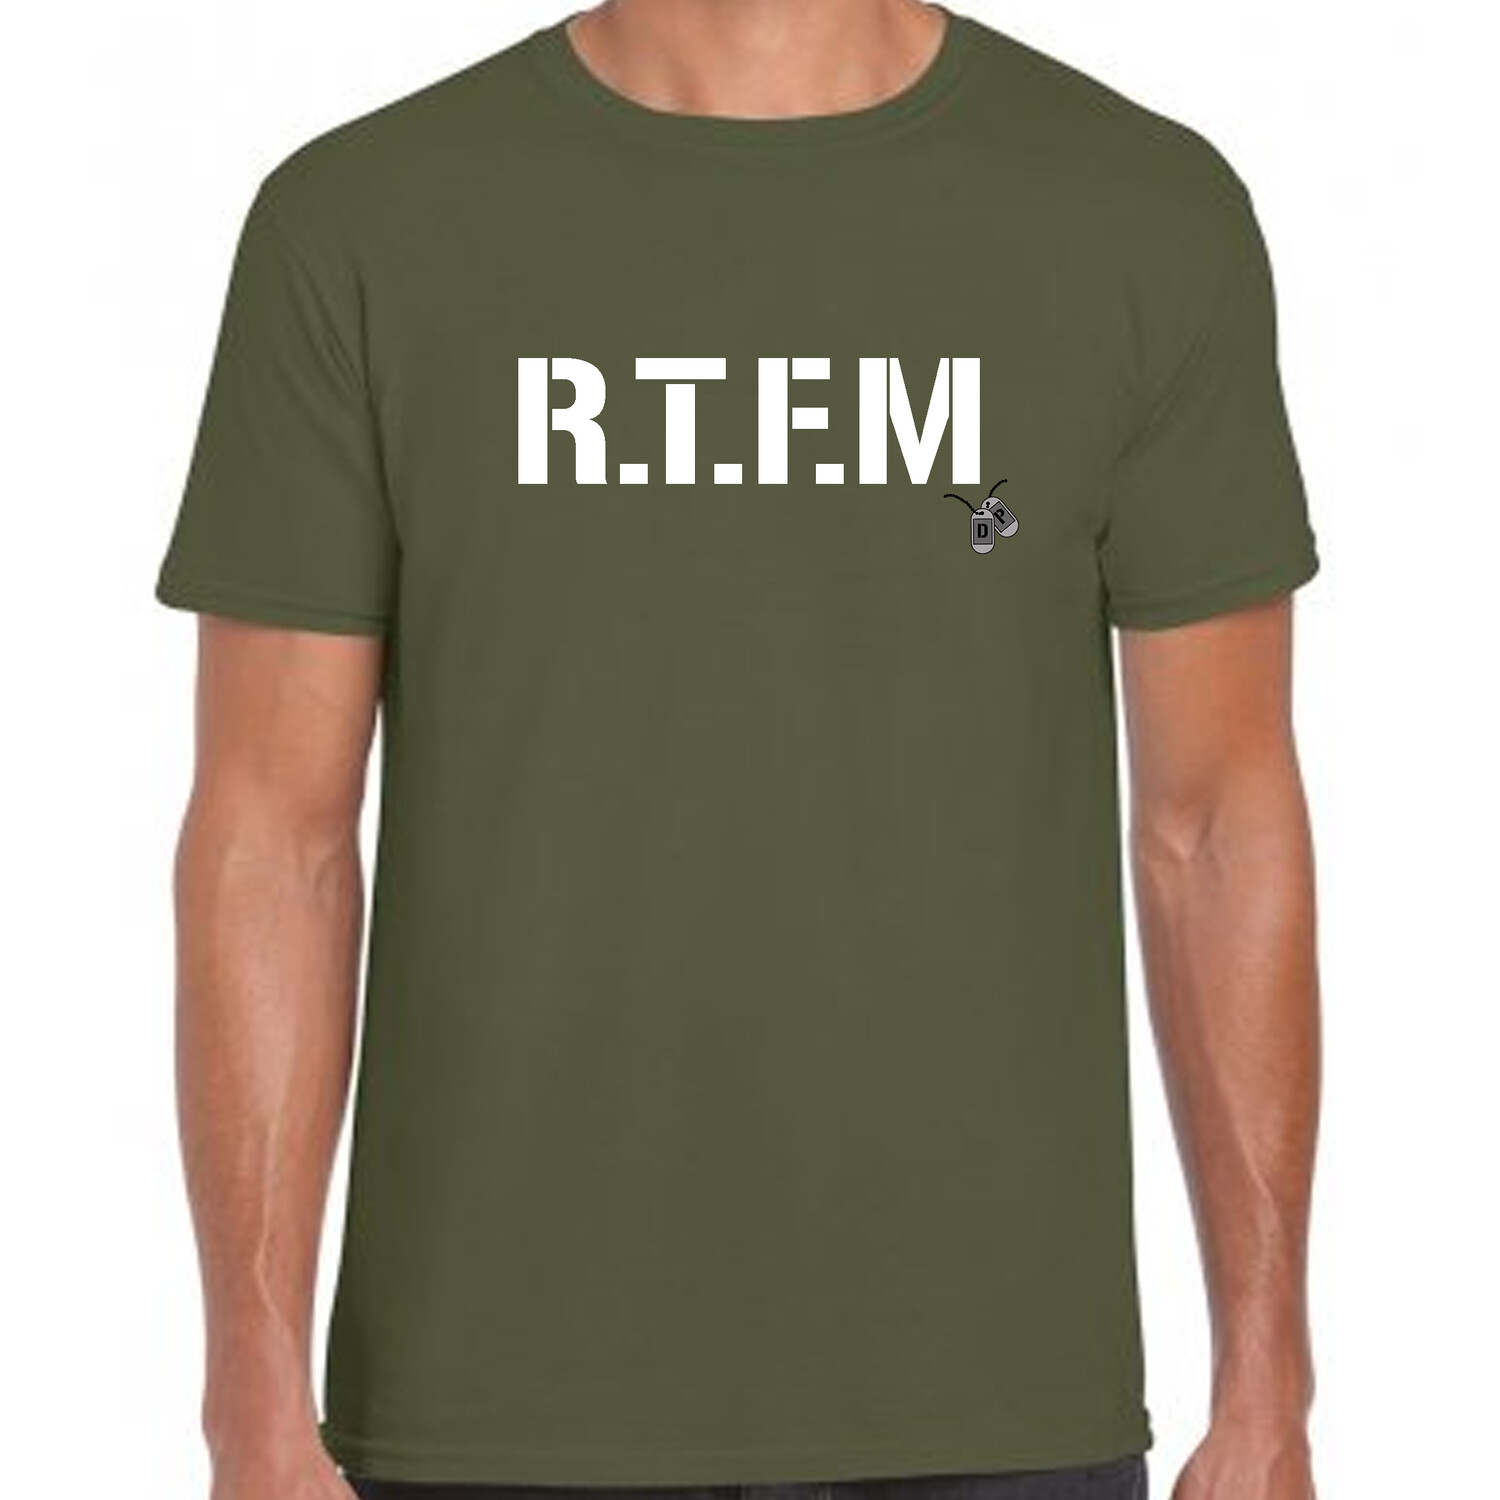 RTFM T-shirt